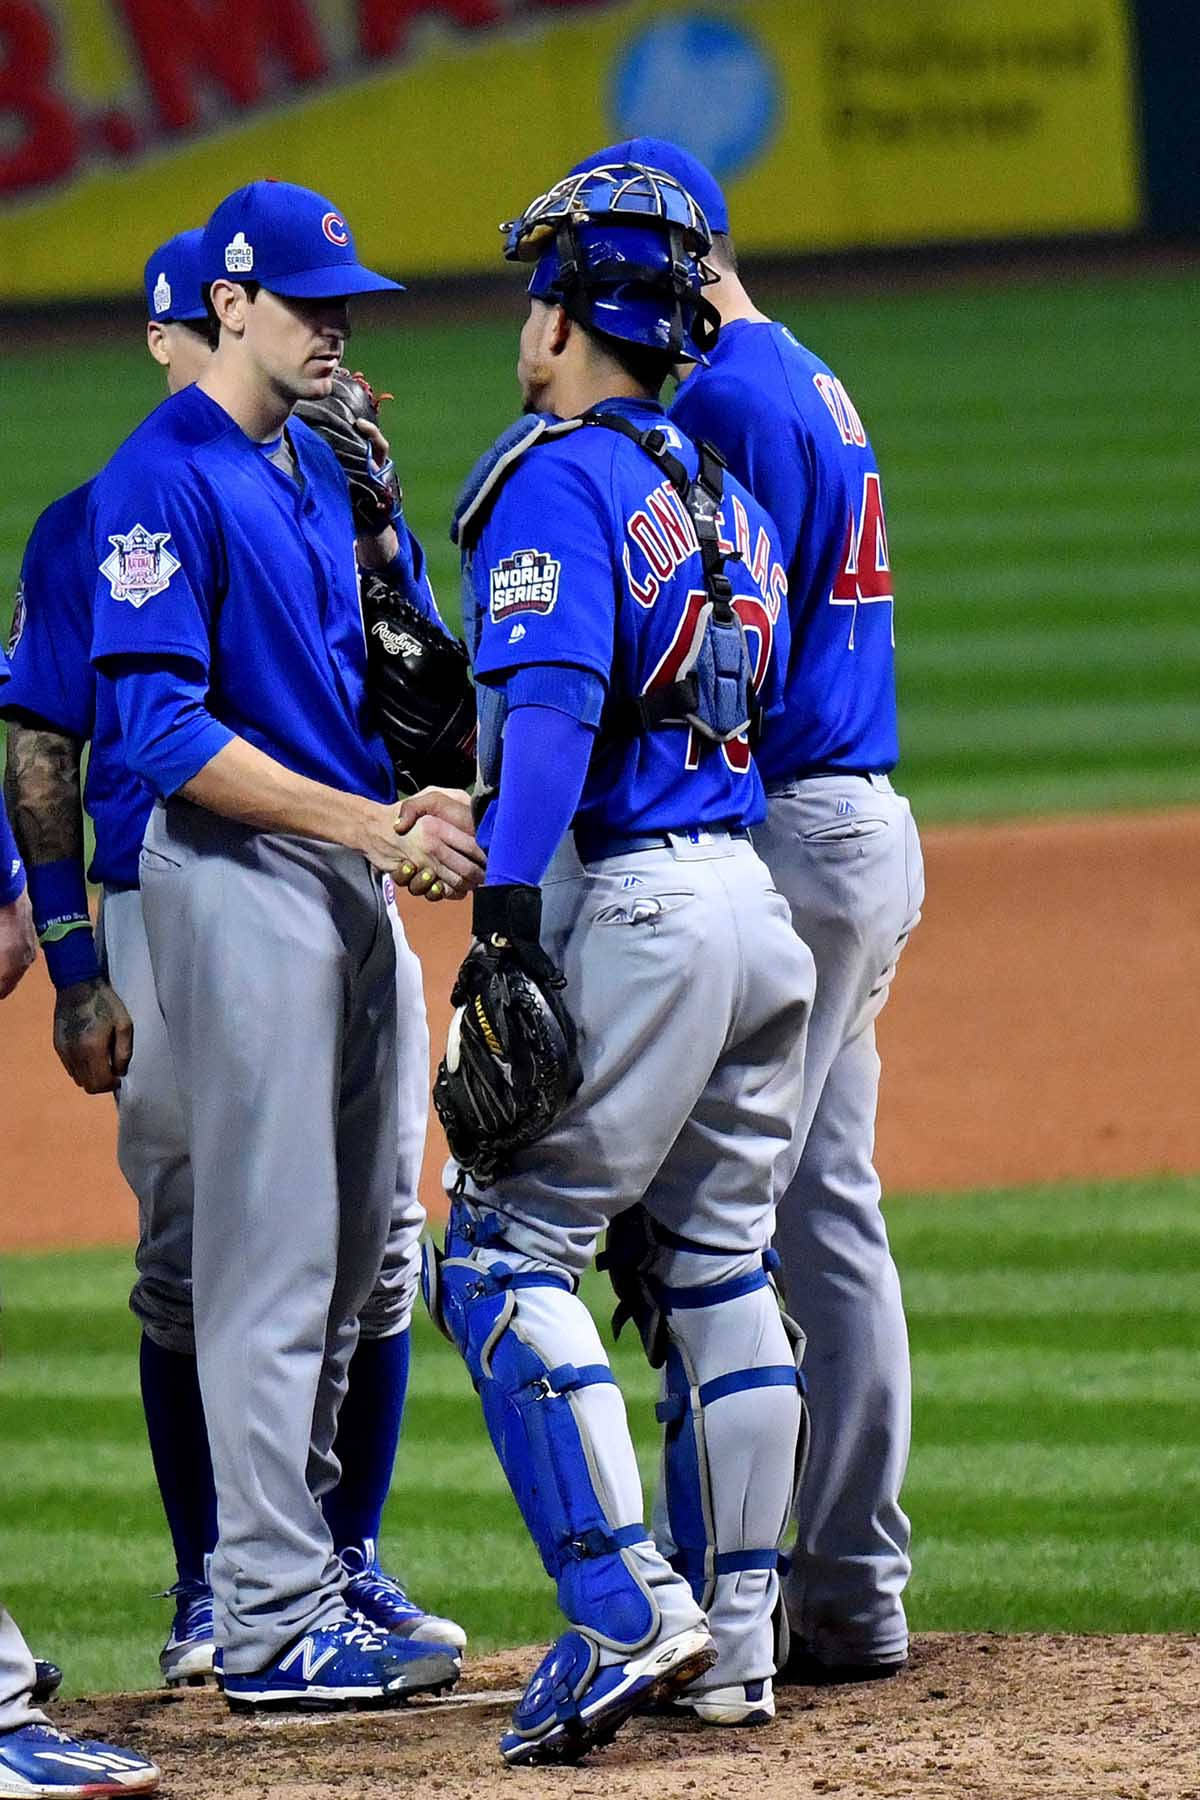 Kylehendricks Con Compañeros De Equipo De Los Chicago Cubs. Fondo de pantalla